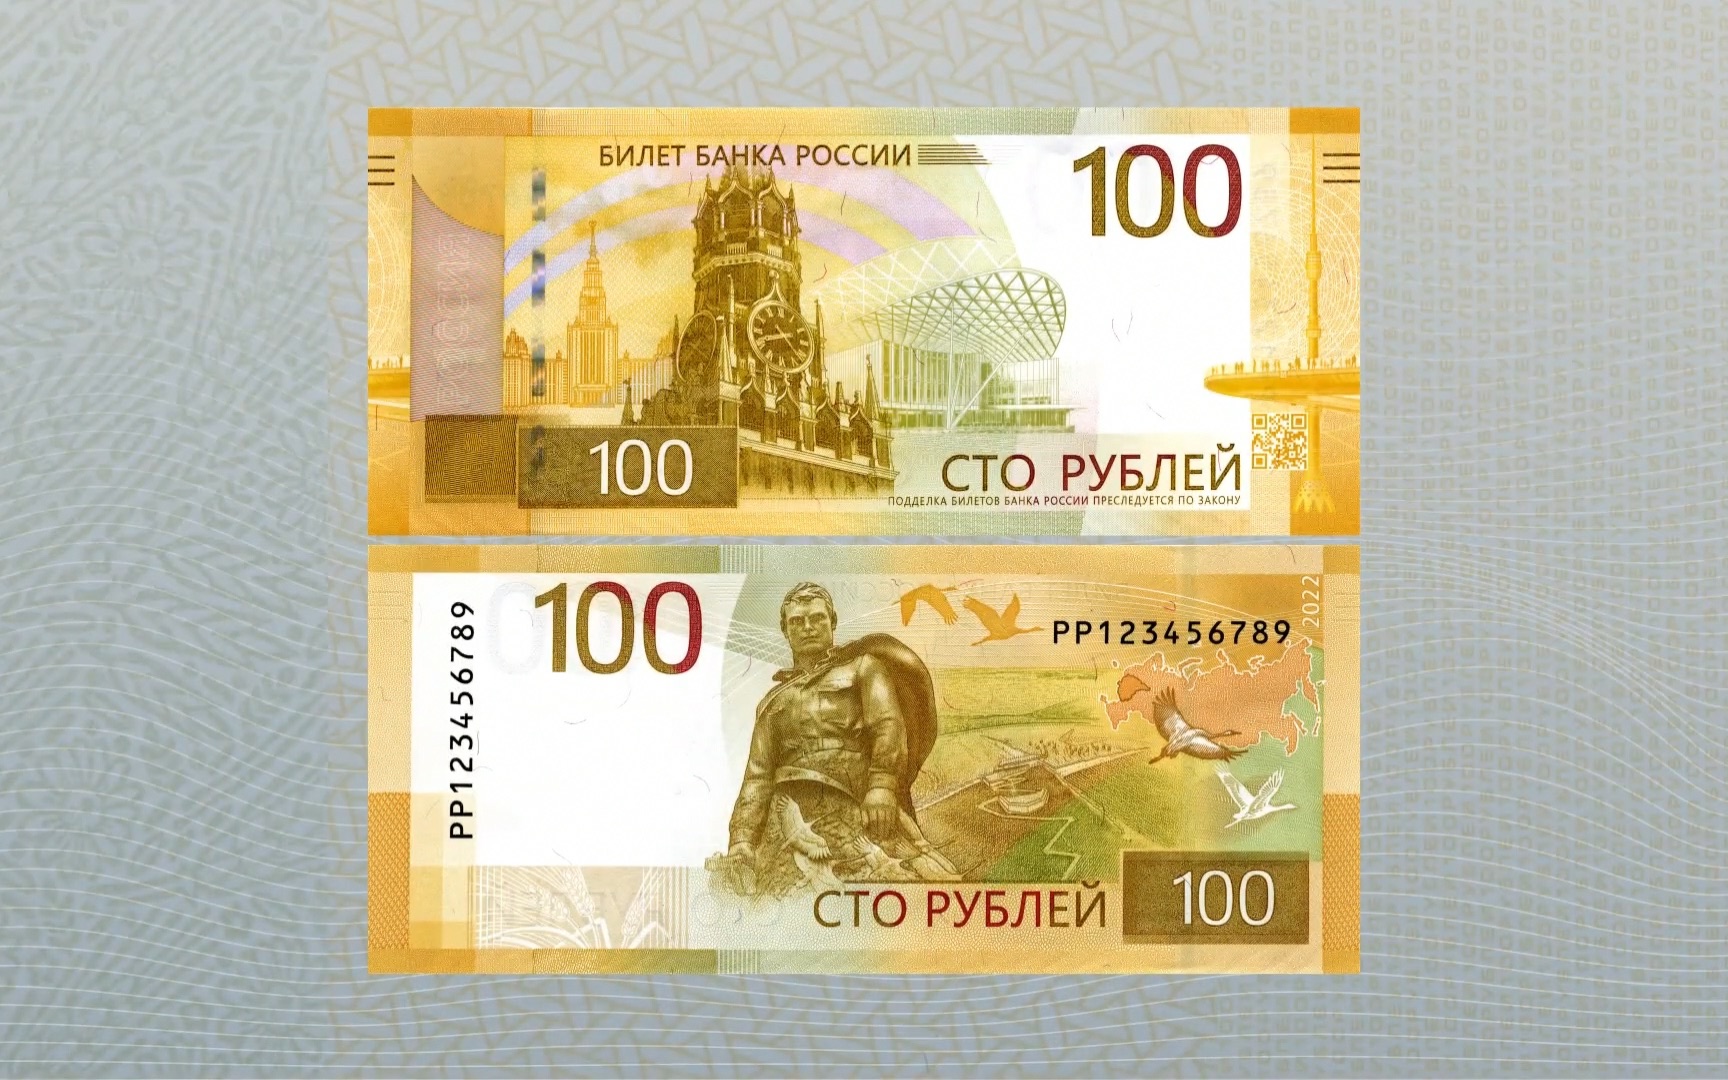 俄罗斯2022年新版100卢布纸币介绍官方宣传片及发布会展示